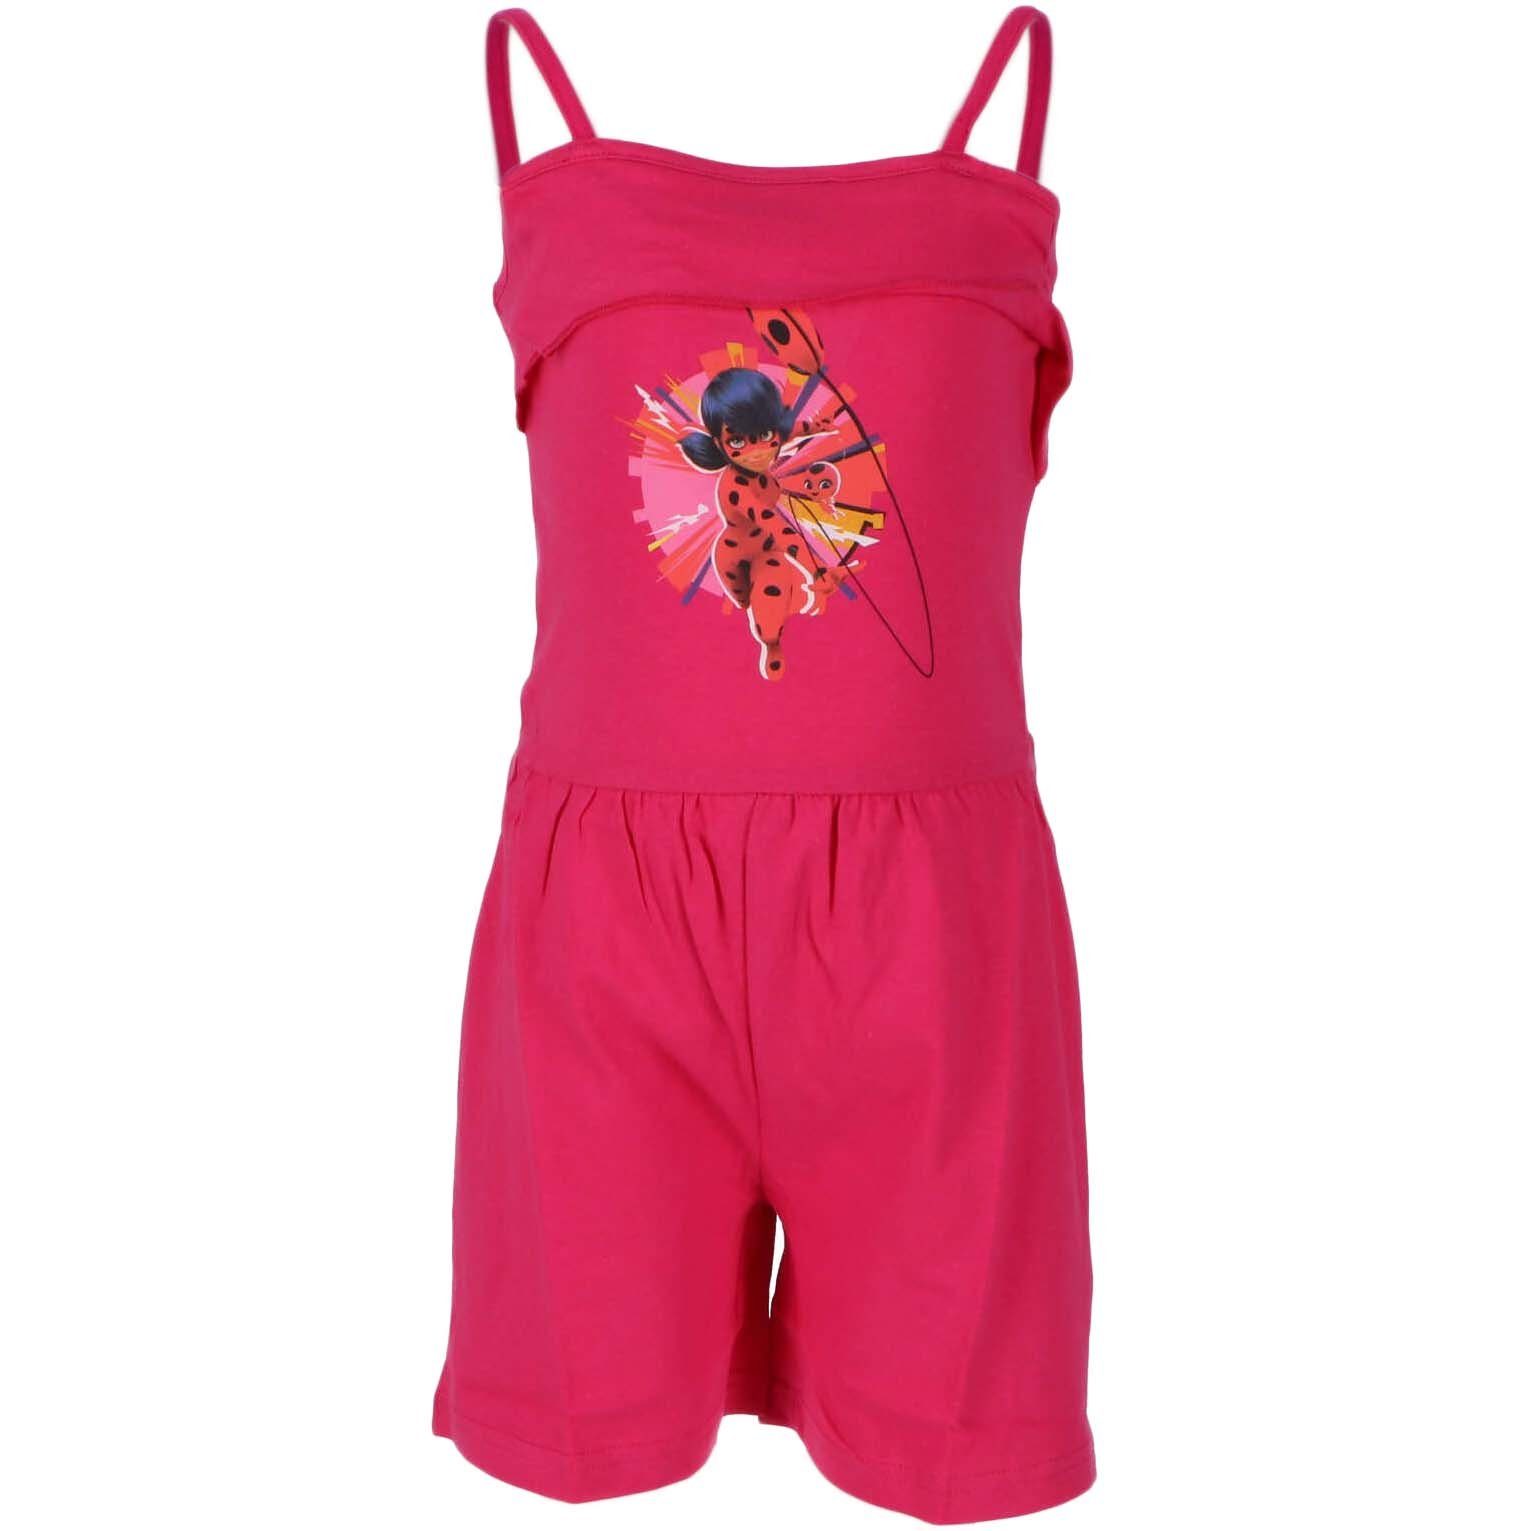 toon donker elke dag Miraculous - Ladybug Jumpsuit Kinder Mädchen Anzug Gr. 98 bis 128, 100%  Baumwolle